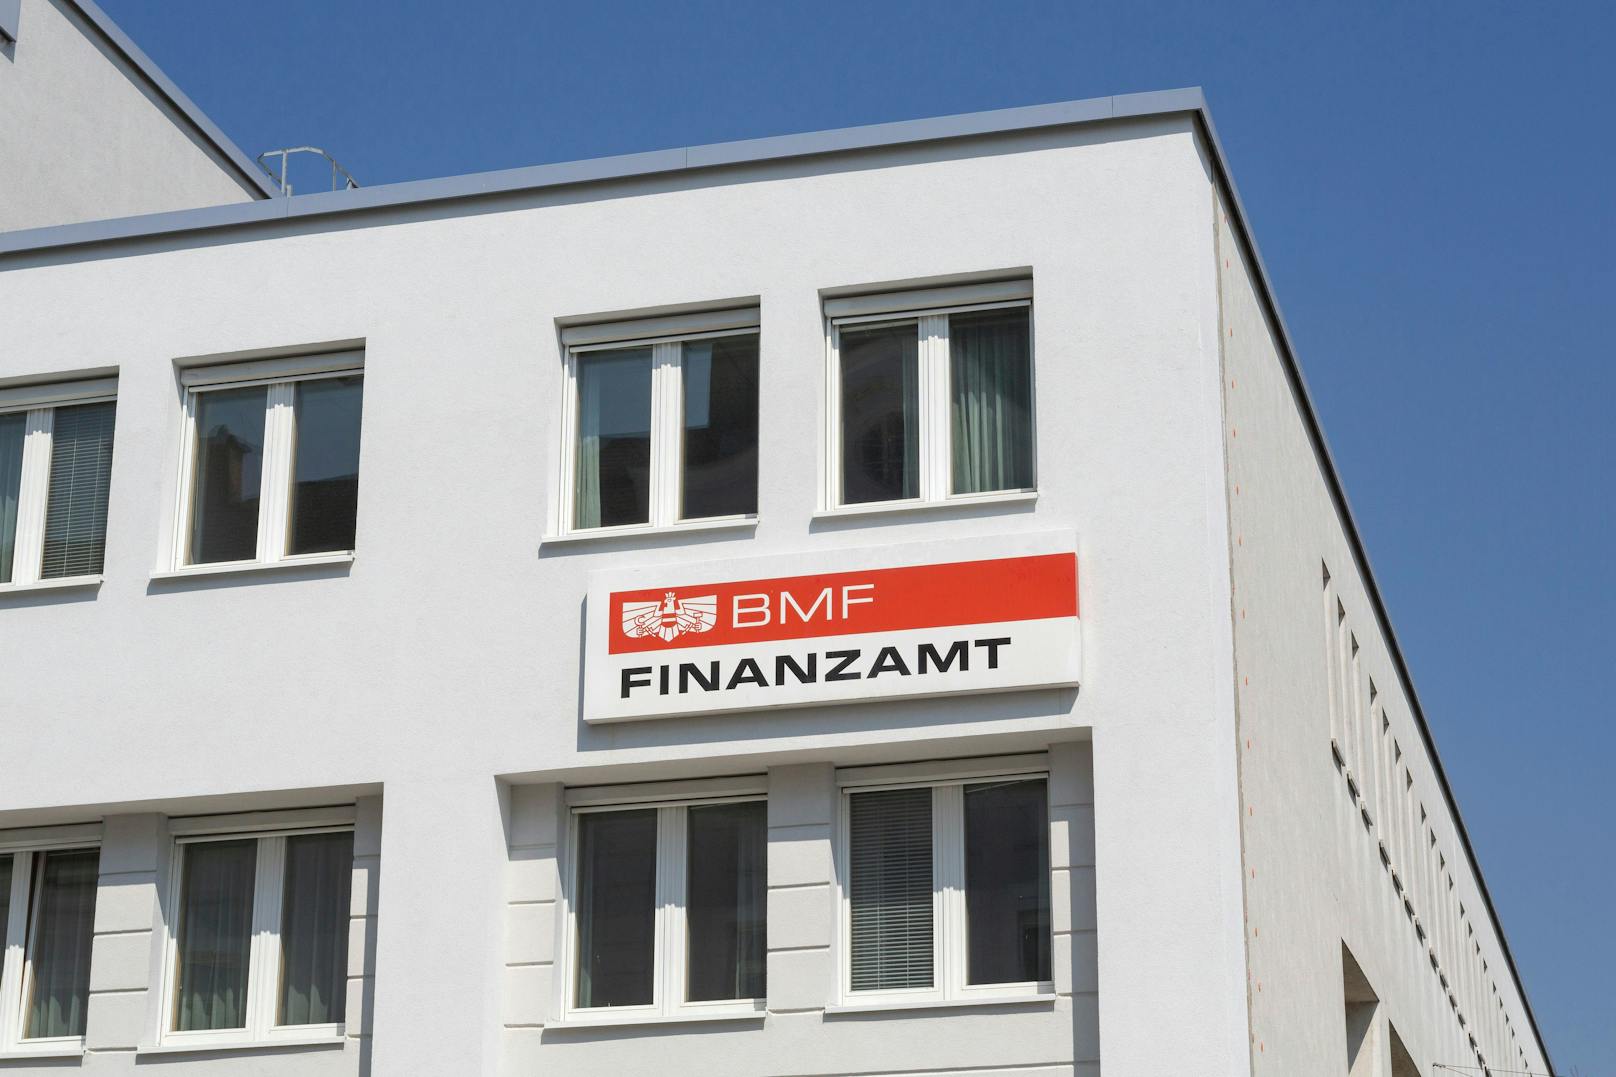 Knalleffekt – 66 % wollen neue Steuer in Österreich